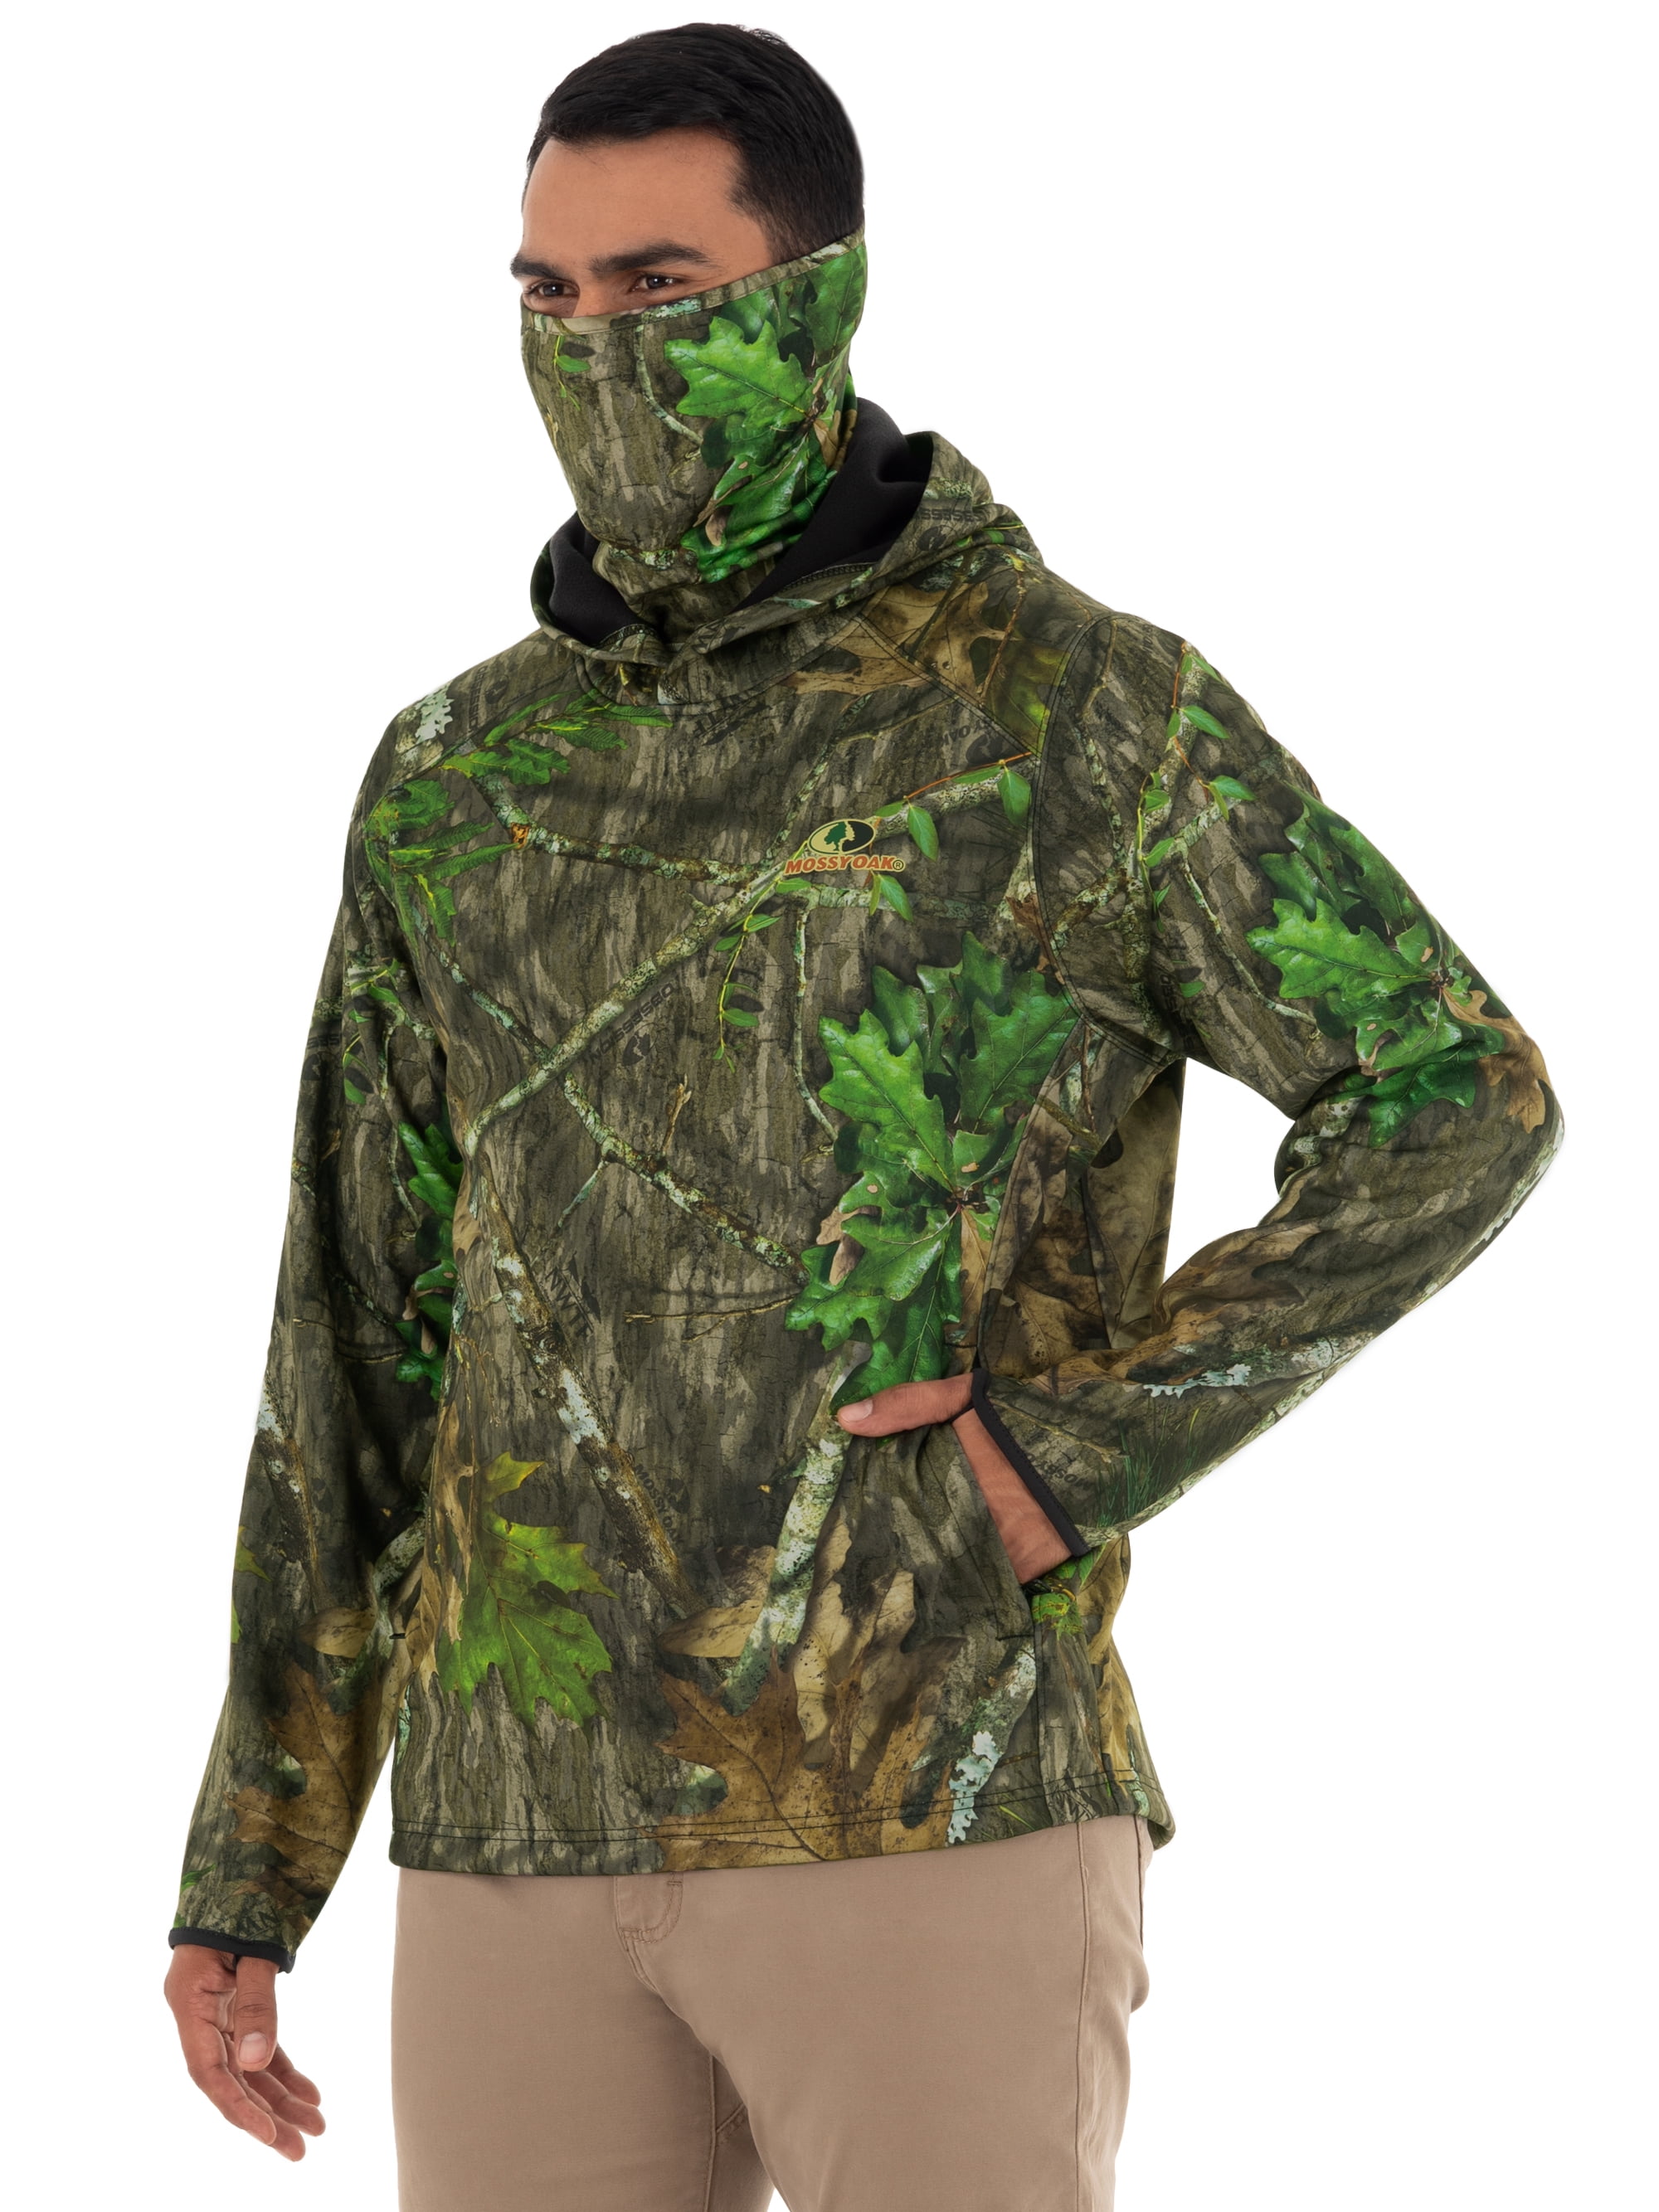 Digital Camouflage Clothing